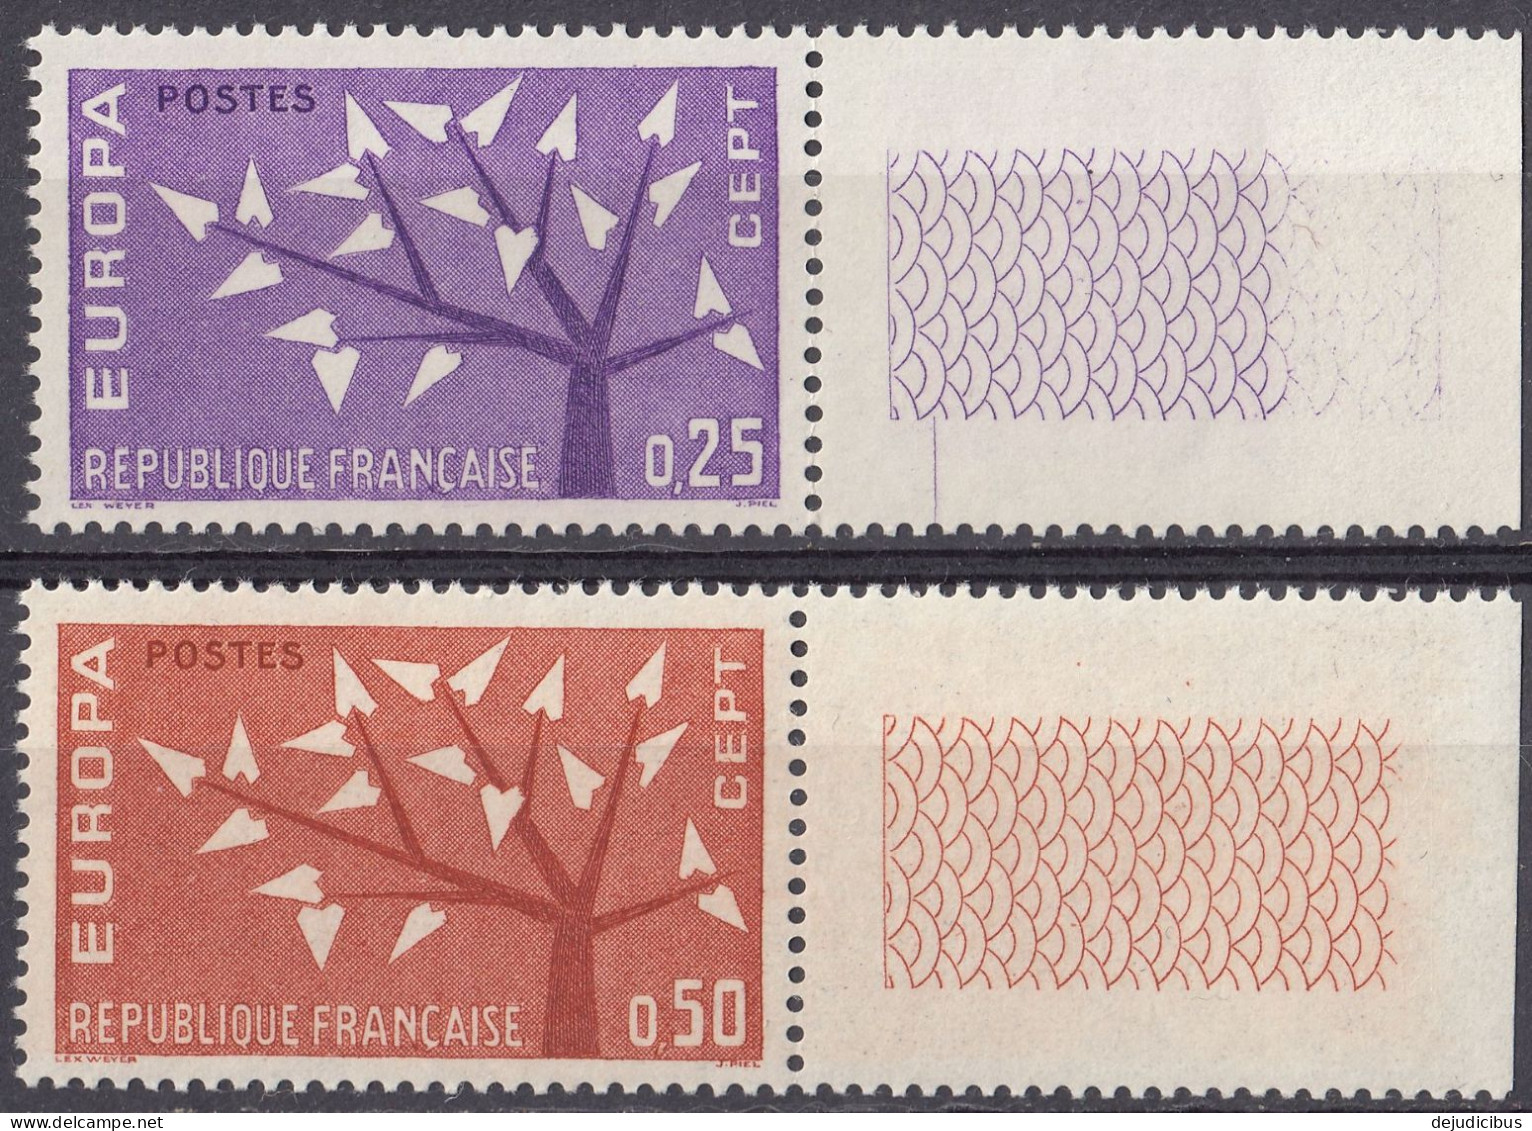 FRANCE - 1962 - Serie Completa Formata Da 2 Valori Nuovi MNH: Yvert 1358/1359 Con Margini Di Foglio. - Nuovi